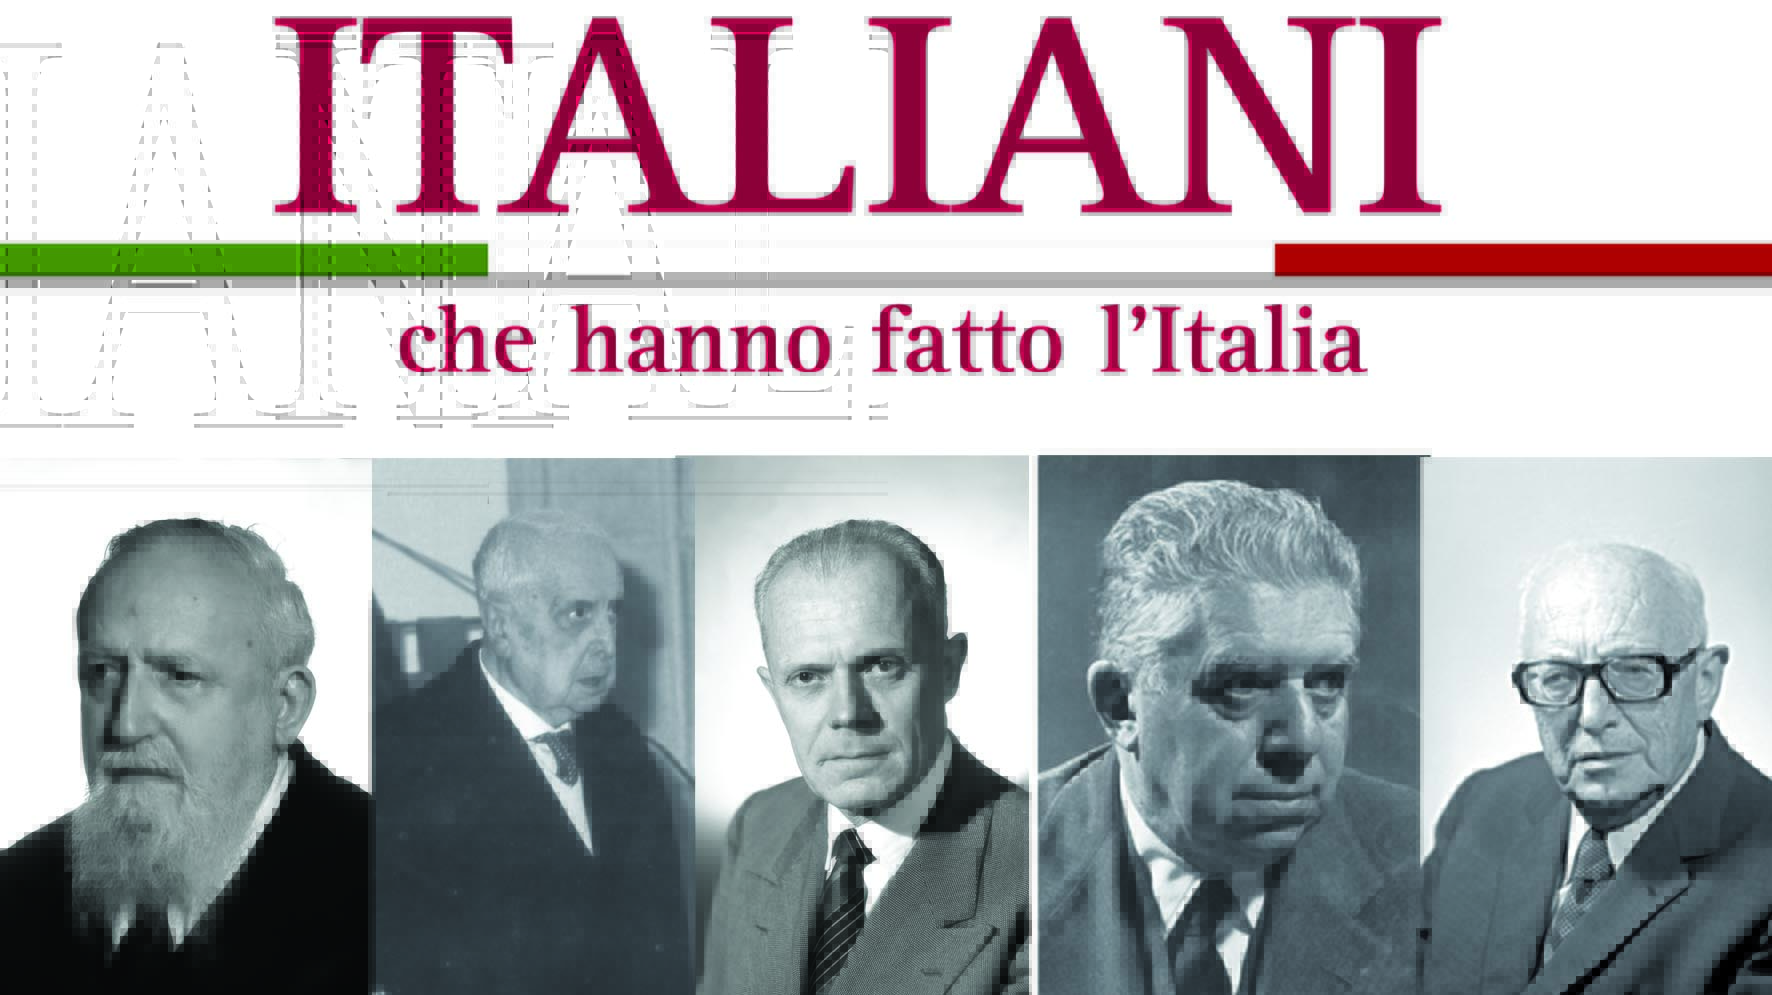 Italiani che hanno fatto l'Italia